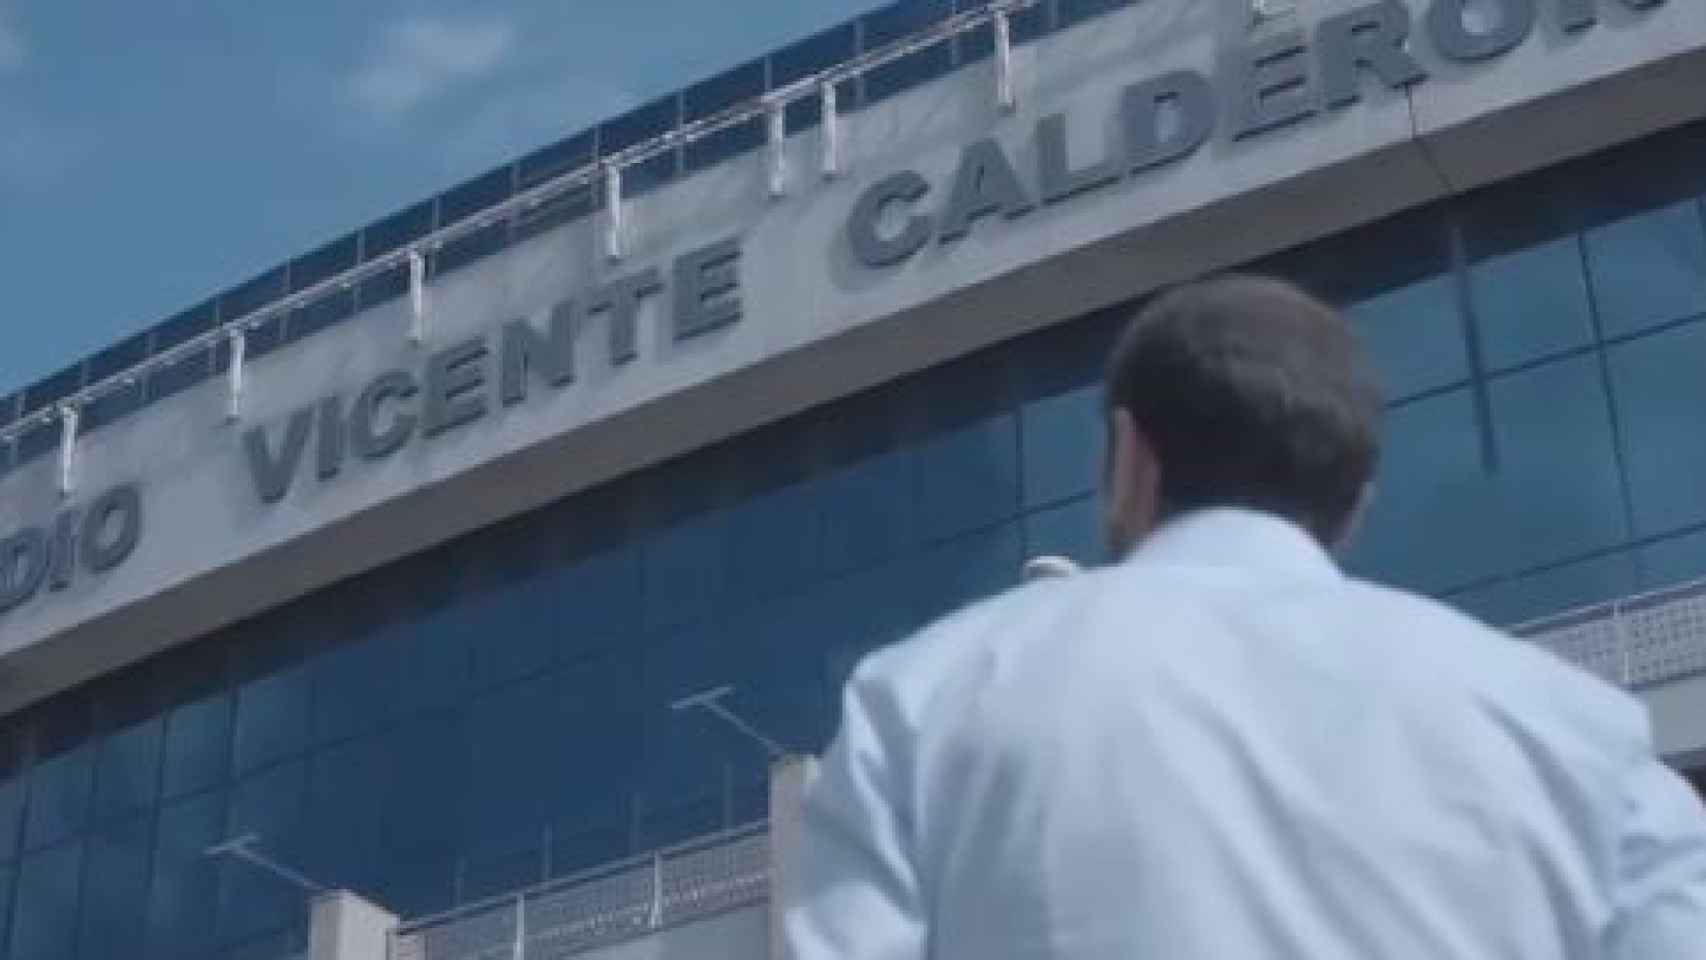 Diego Godín dice adiós al Estadio Vicente Calderón